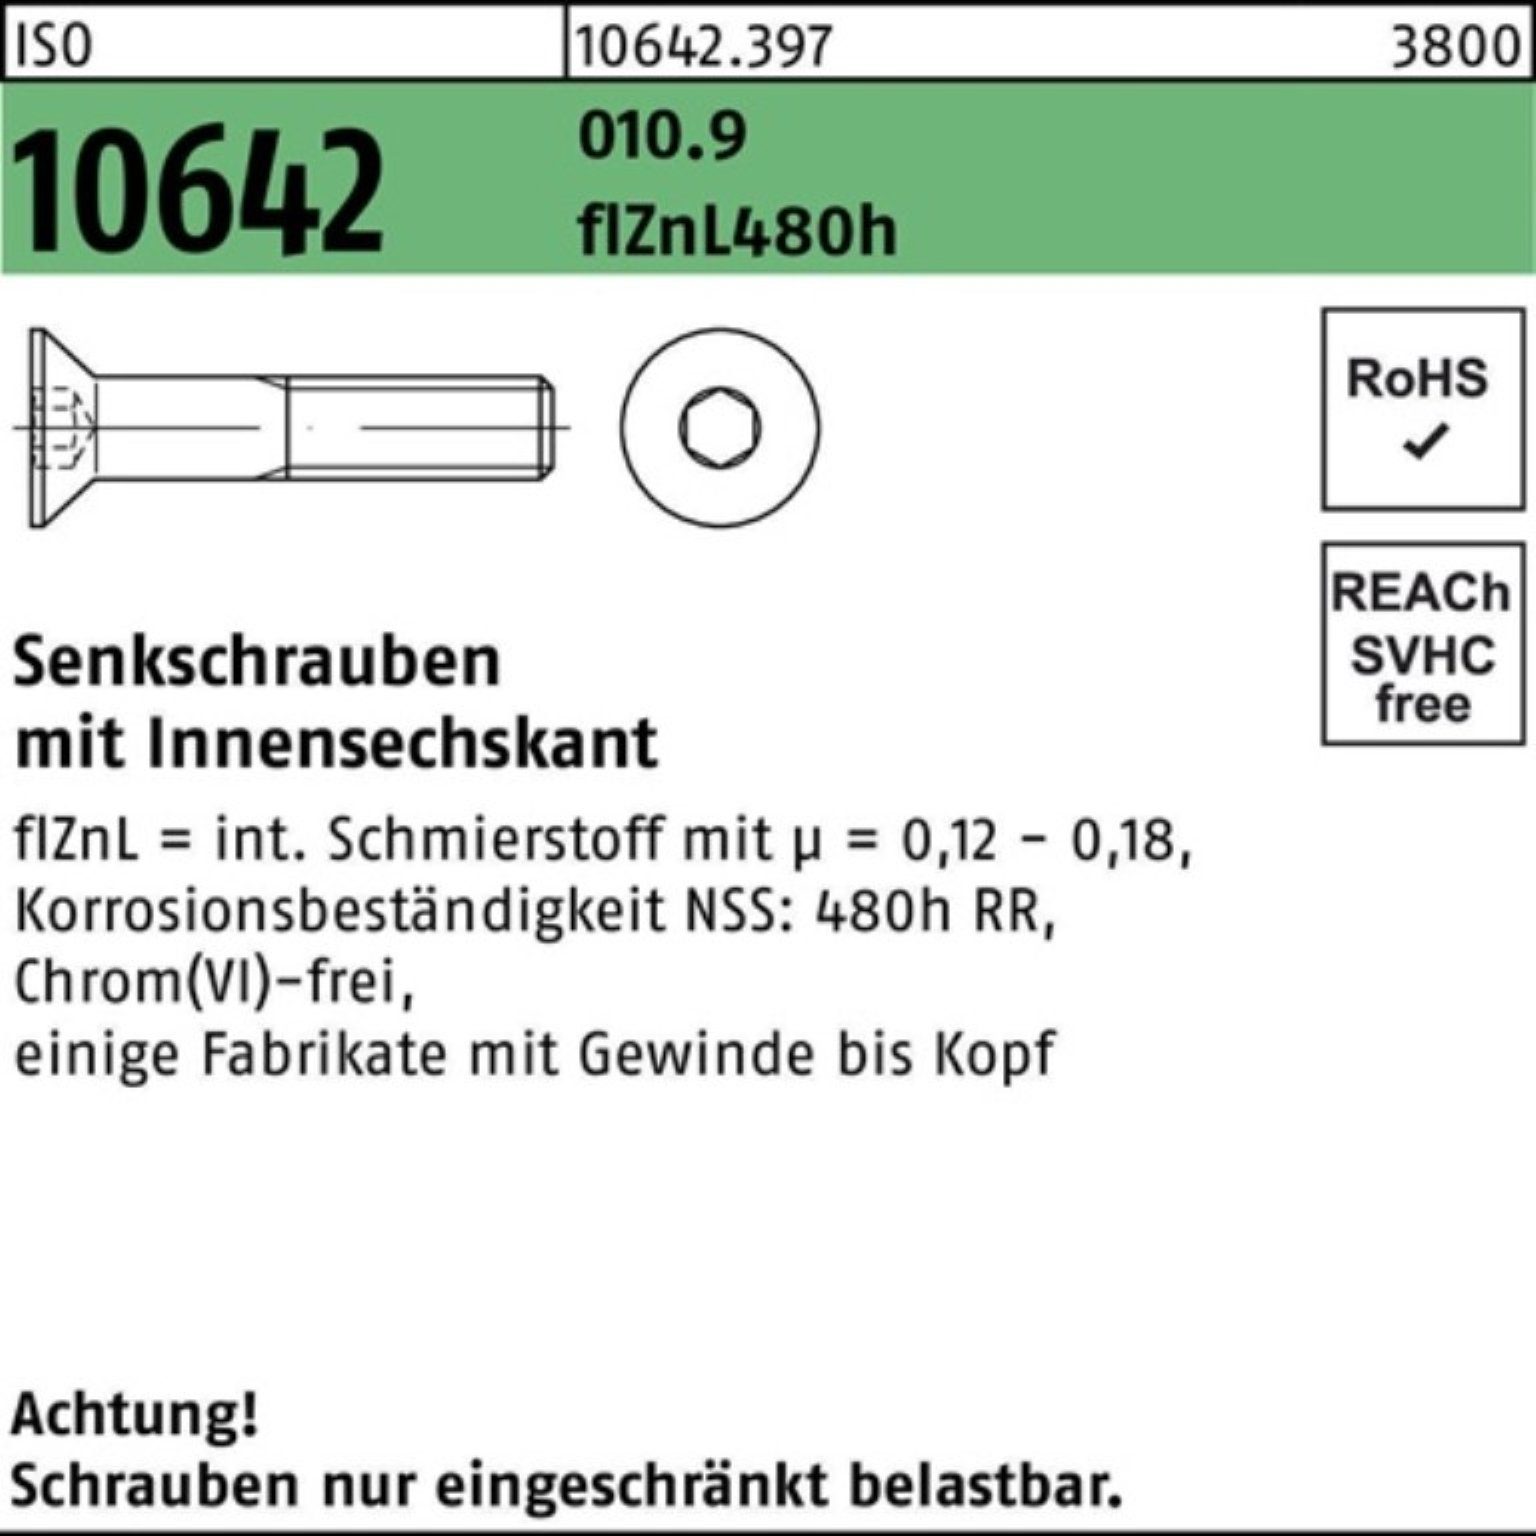 Innen-6kt Senkschraube 480h Senkschraube M16x60 Reyher ISO 010.9 10642 100er Pack flZnL zi